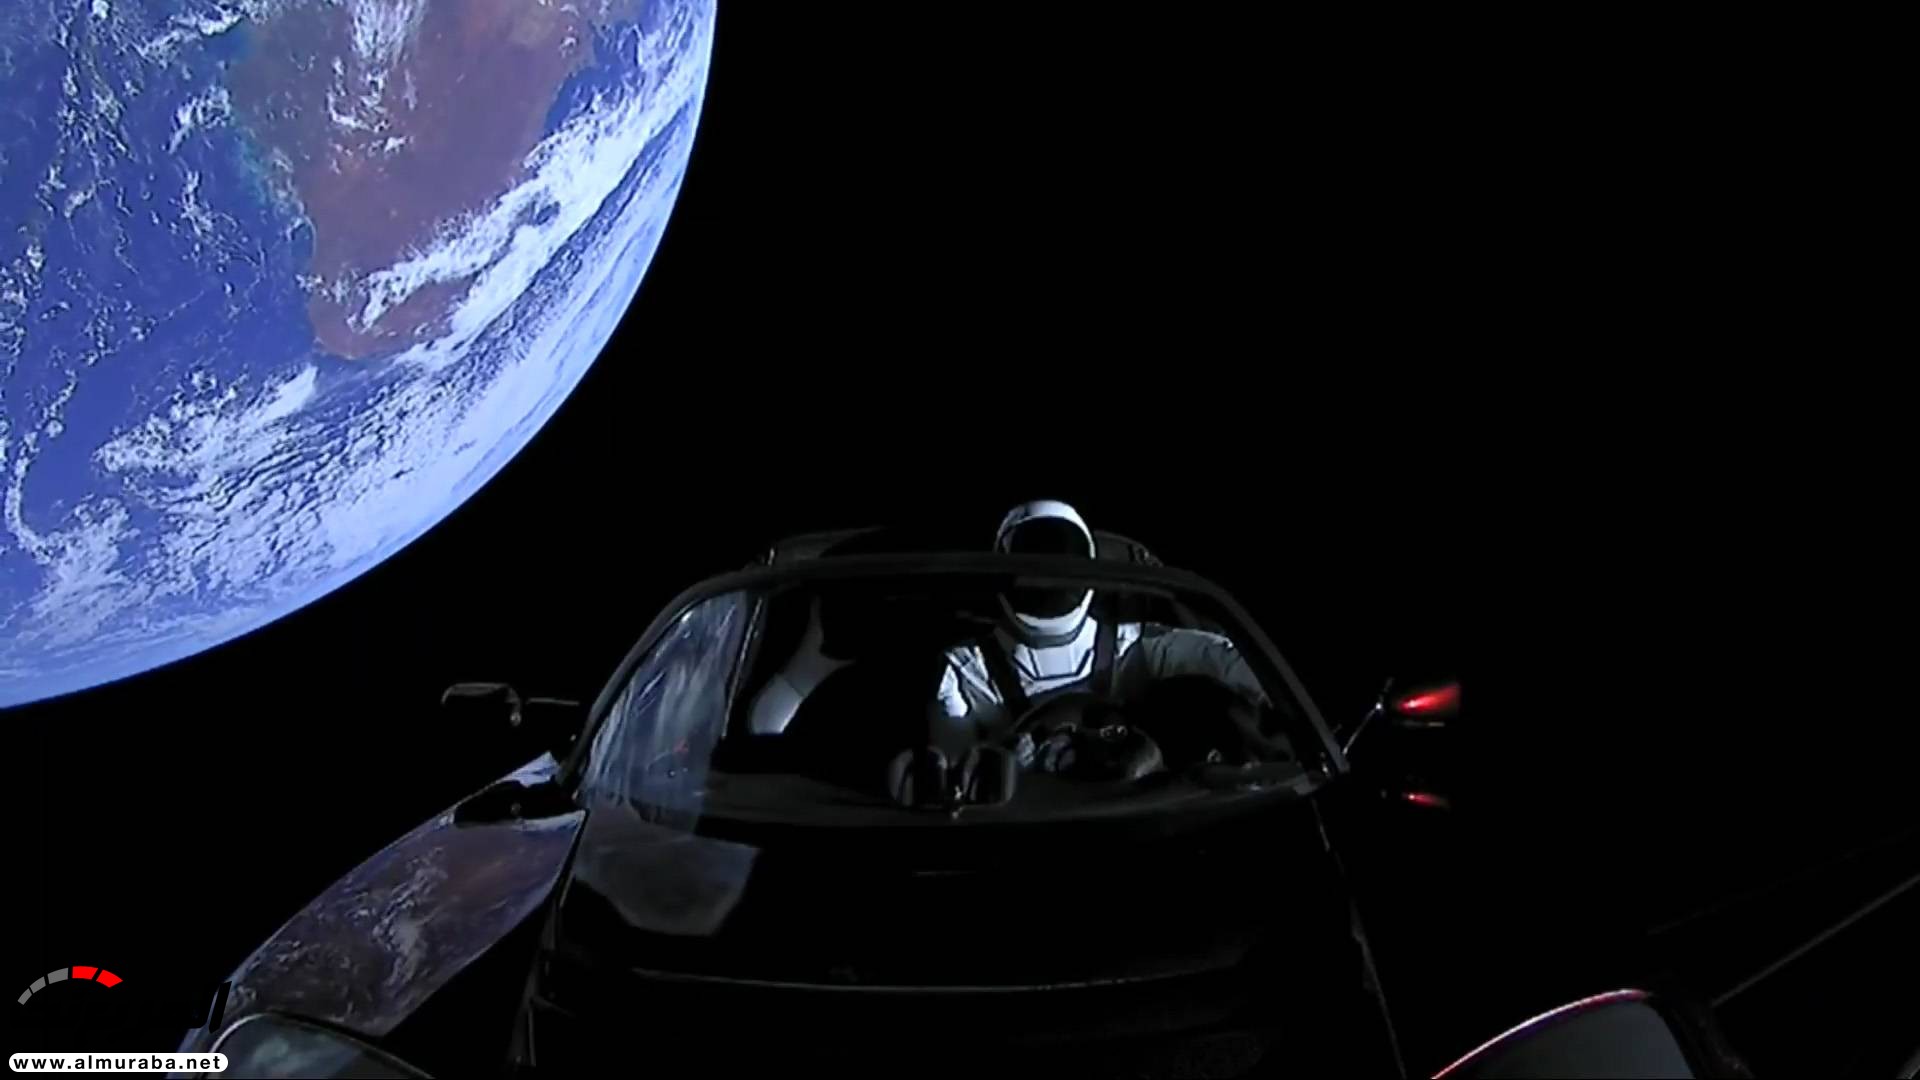 "بالفيديو والصور" إيلون ماسك يطلق تيسلا رودستر إلى المريخ في أقوى صاروخ بالعالم 38